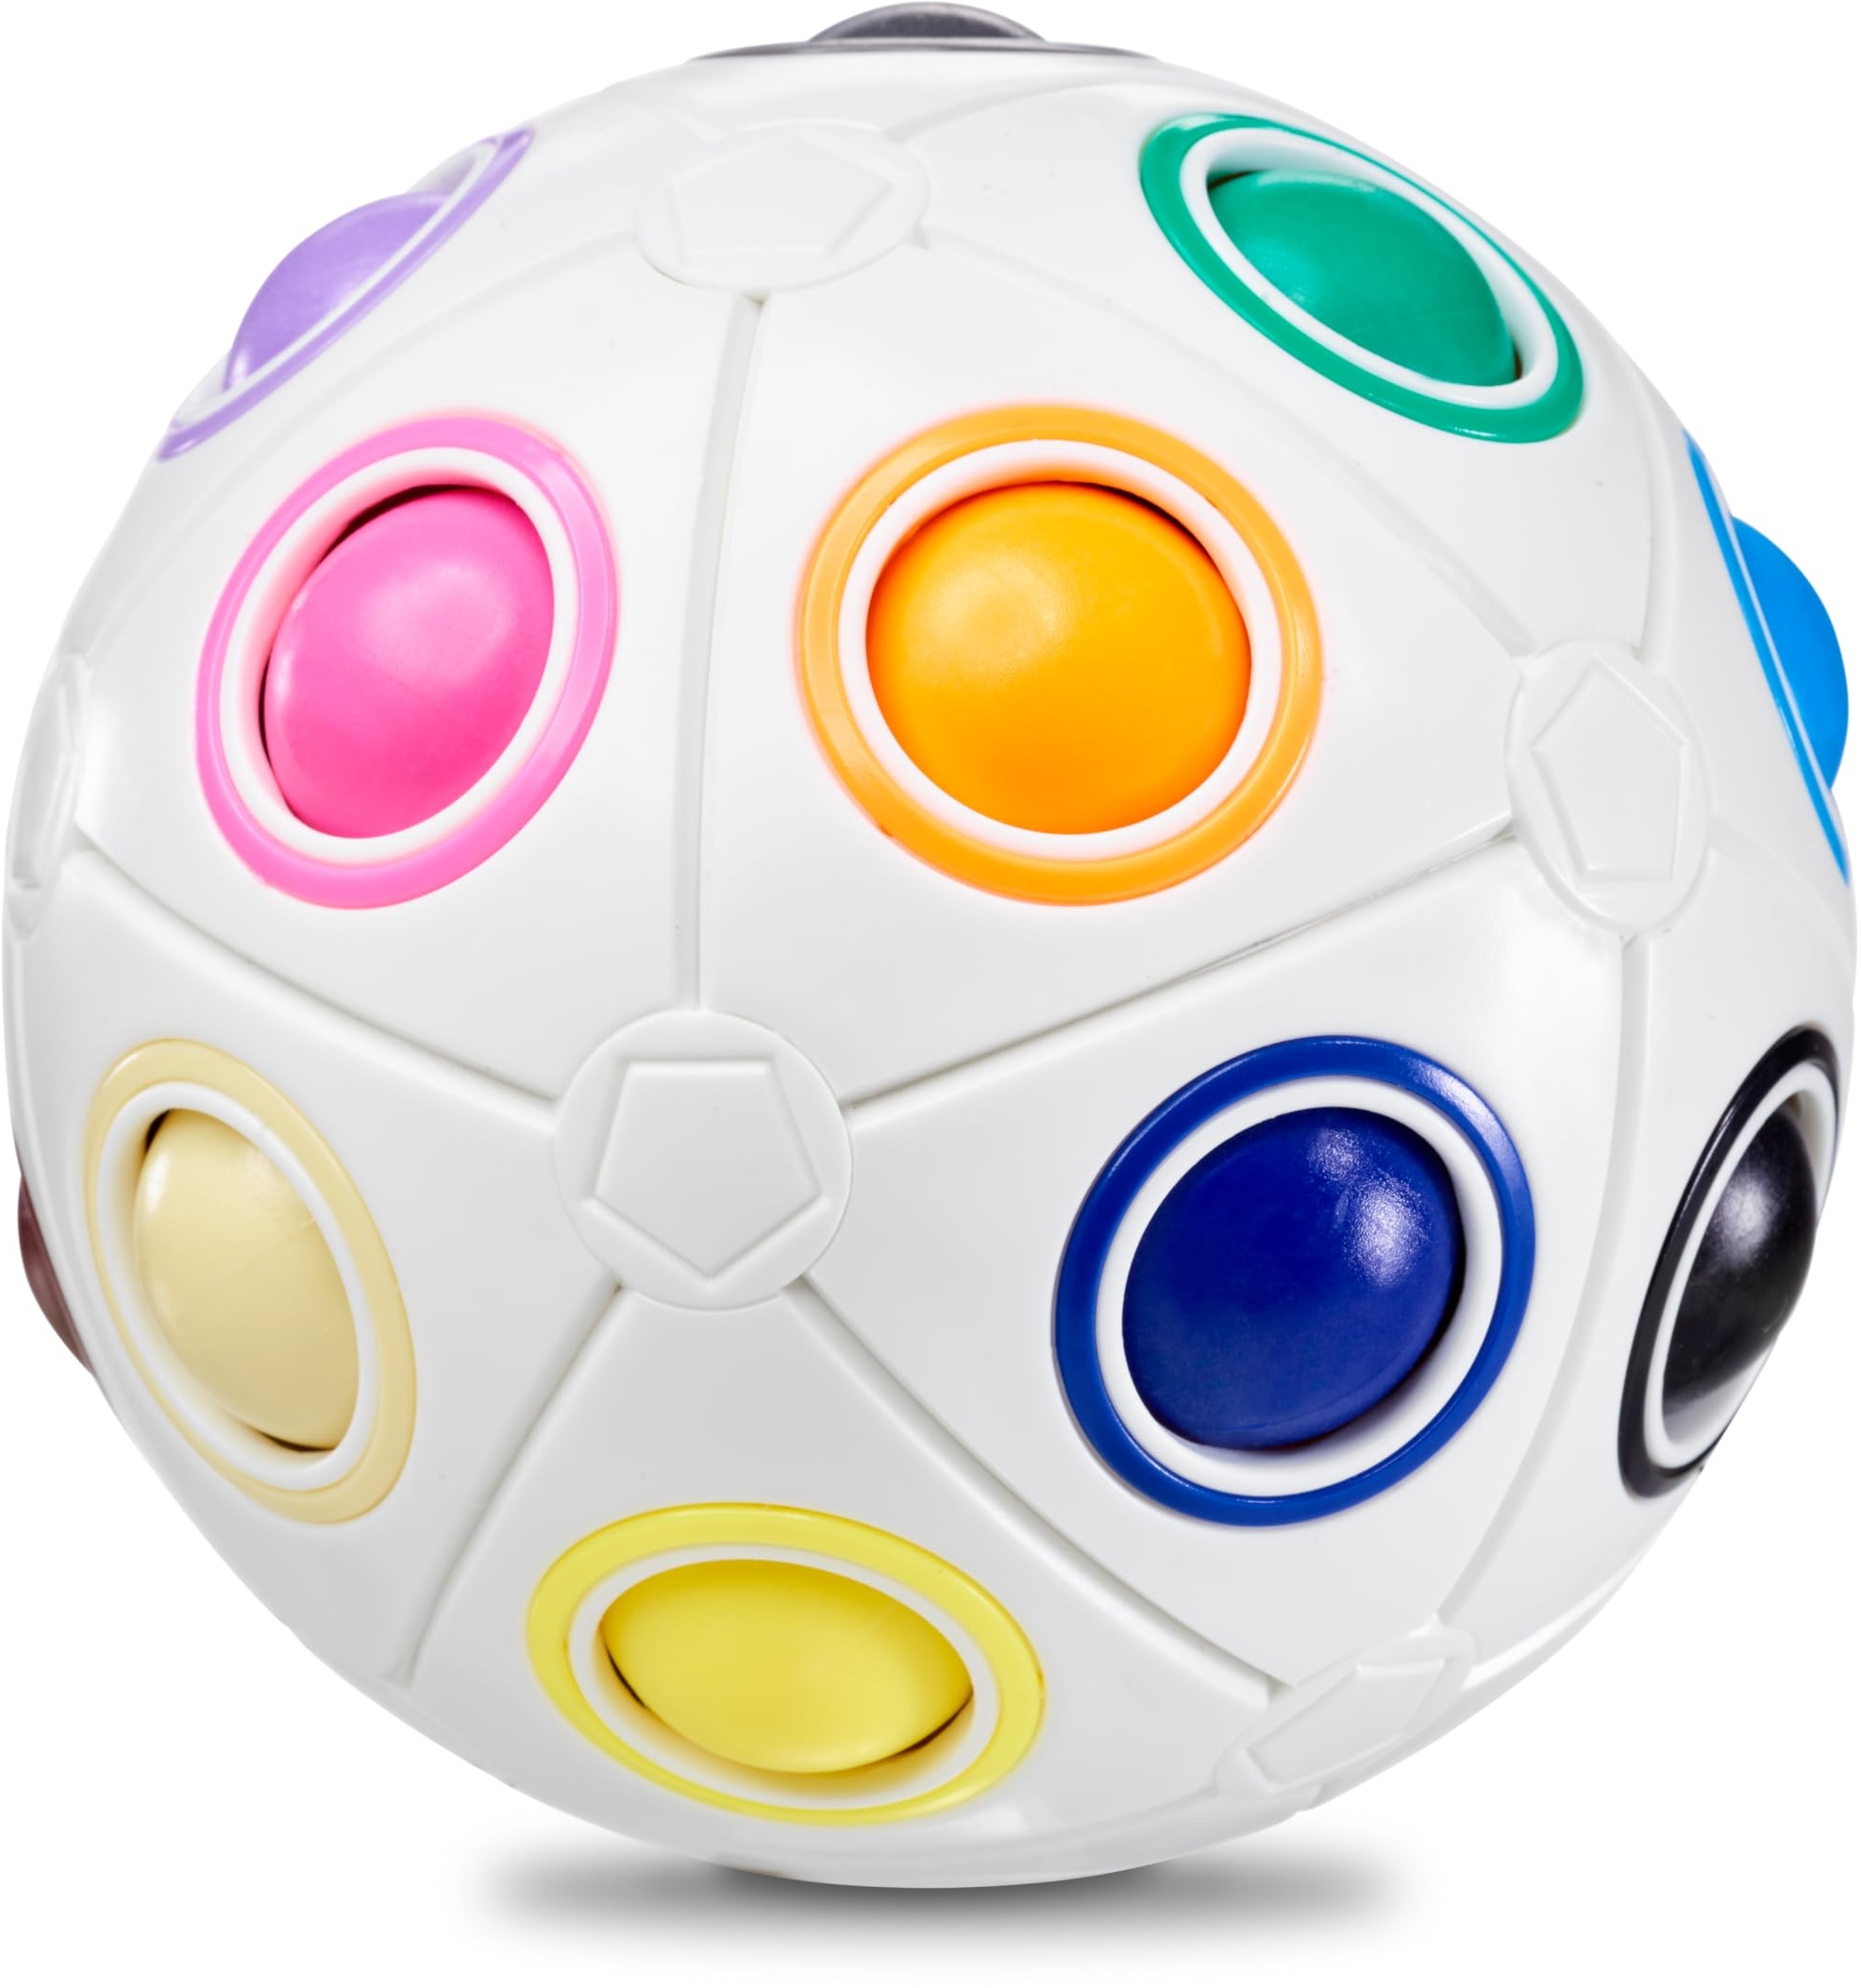 CUBIDI® Original Regenbogenball mit 19 Kugeln - Groß | Geschicklichkeitsspiele ab 6 Jahre für Kinder | Spannendes Knobelspiel für Mädchen und Jungen